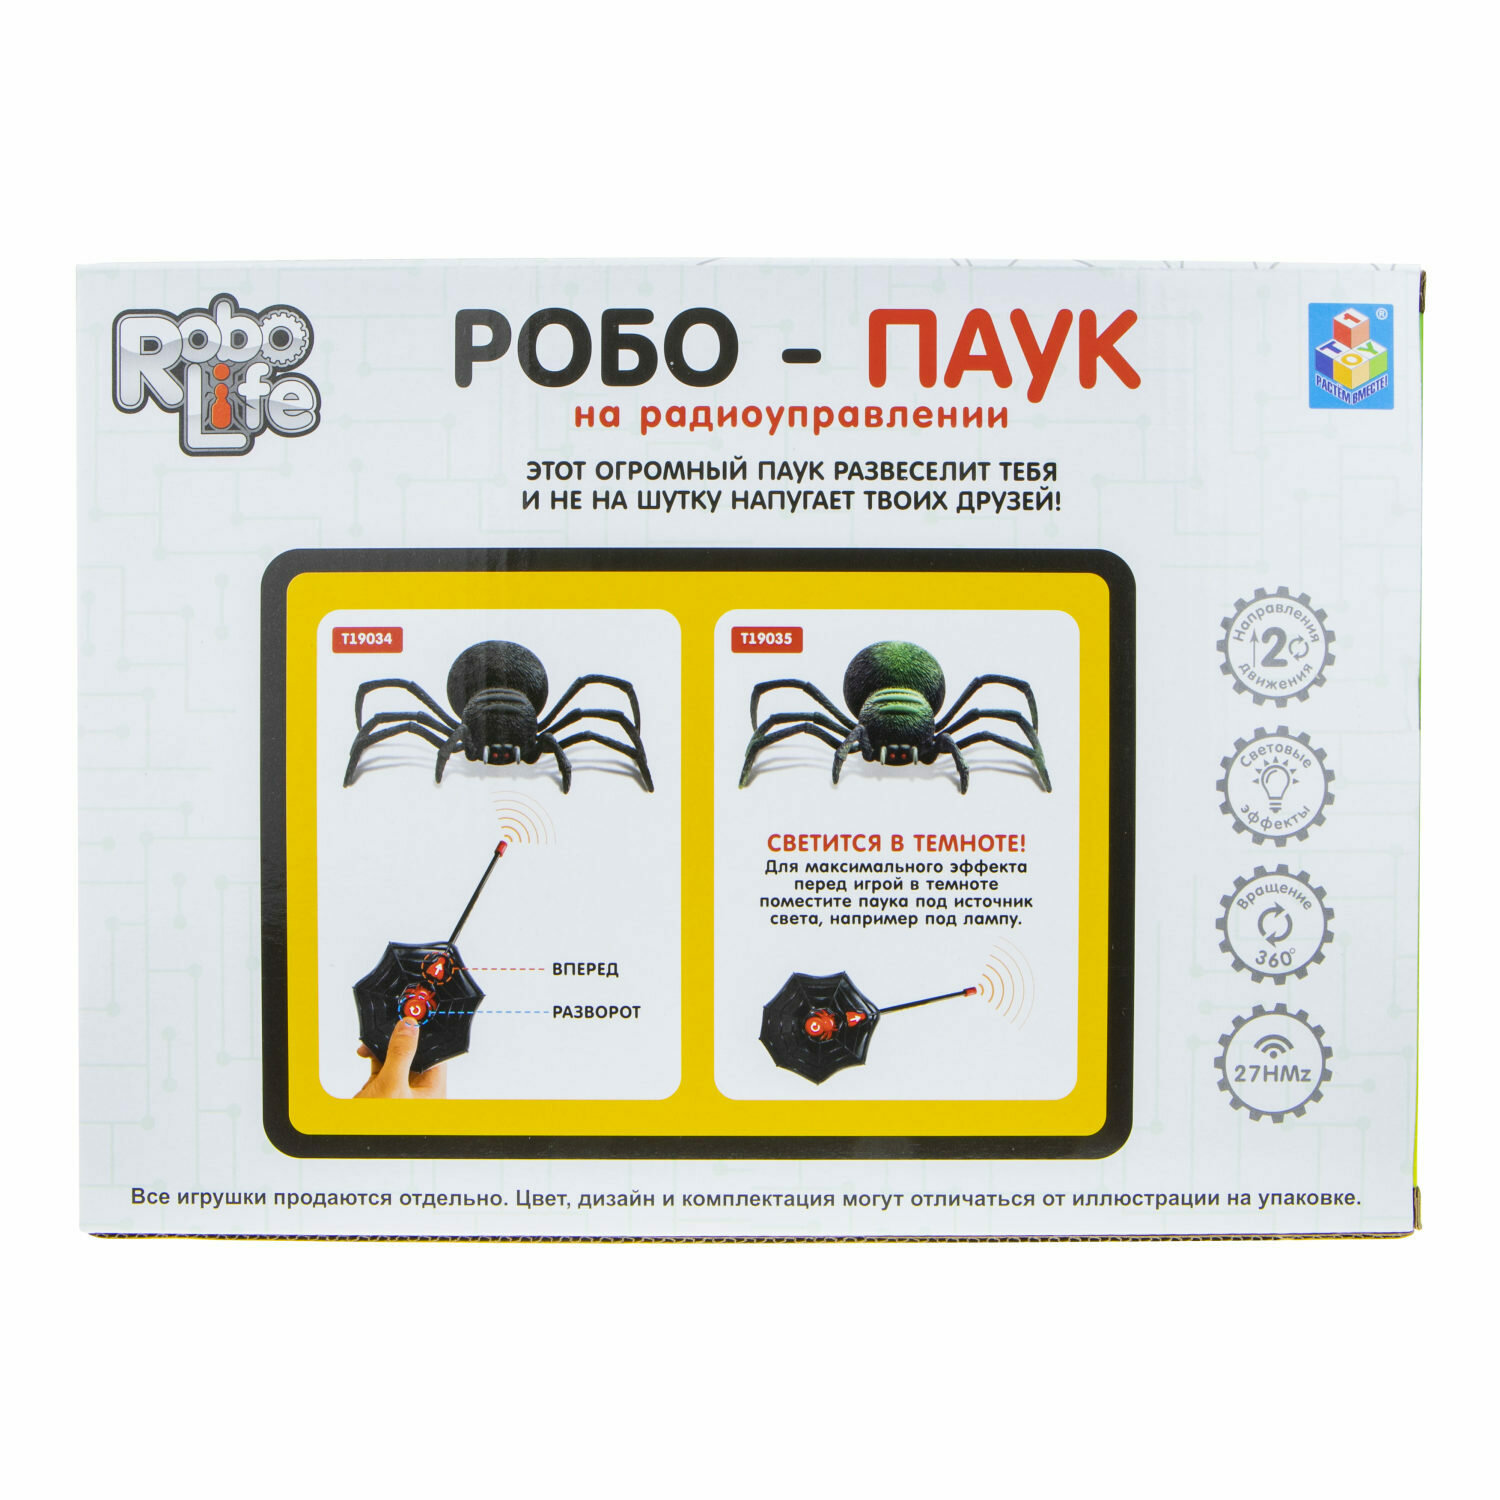 1toy T19034 RoboLife игрушка "Робо-паук" (свет, звук, движение) на р/у - фото №10